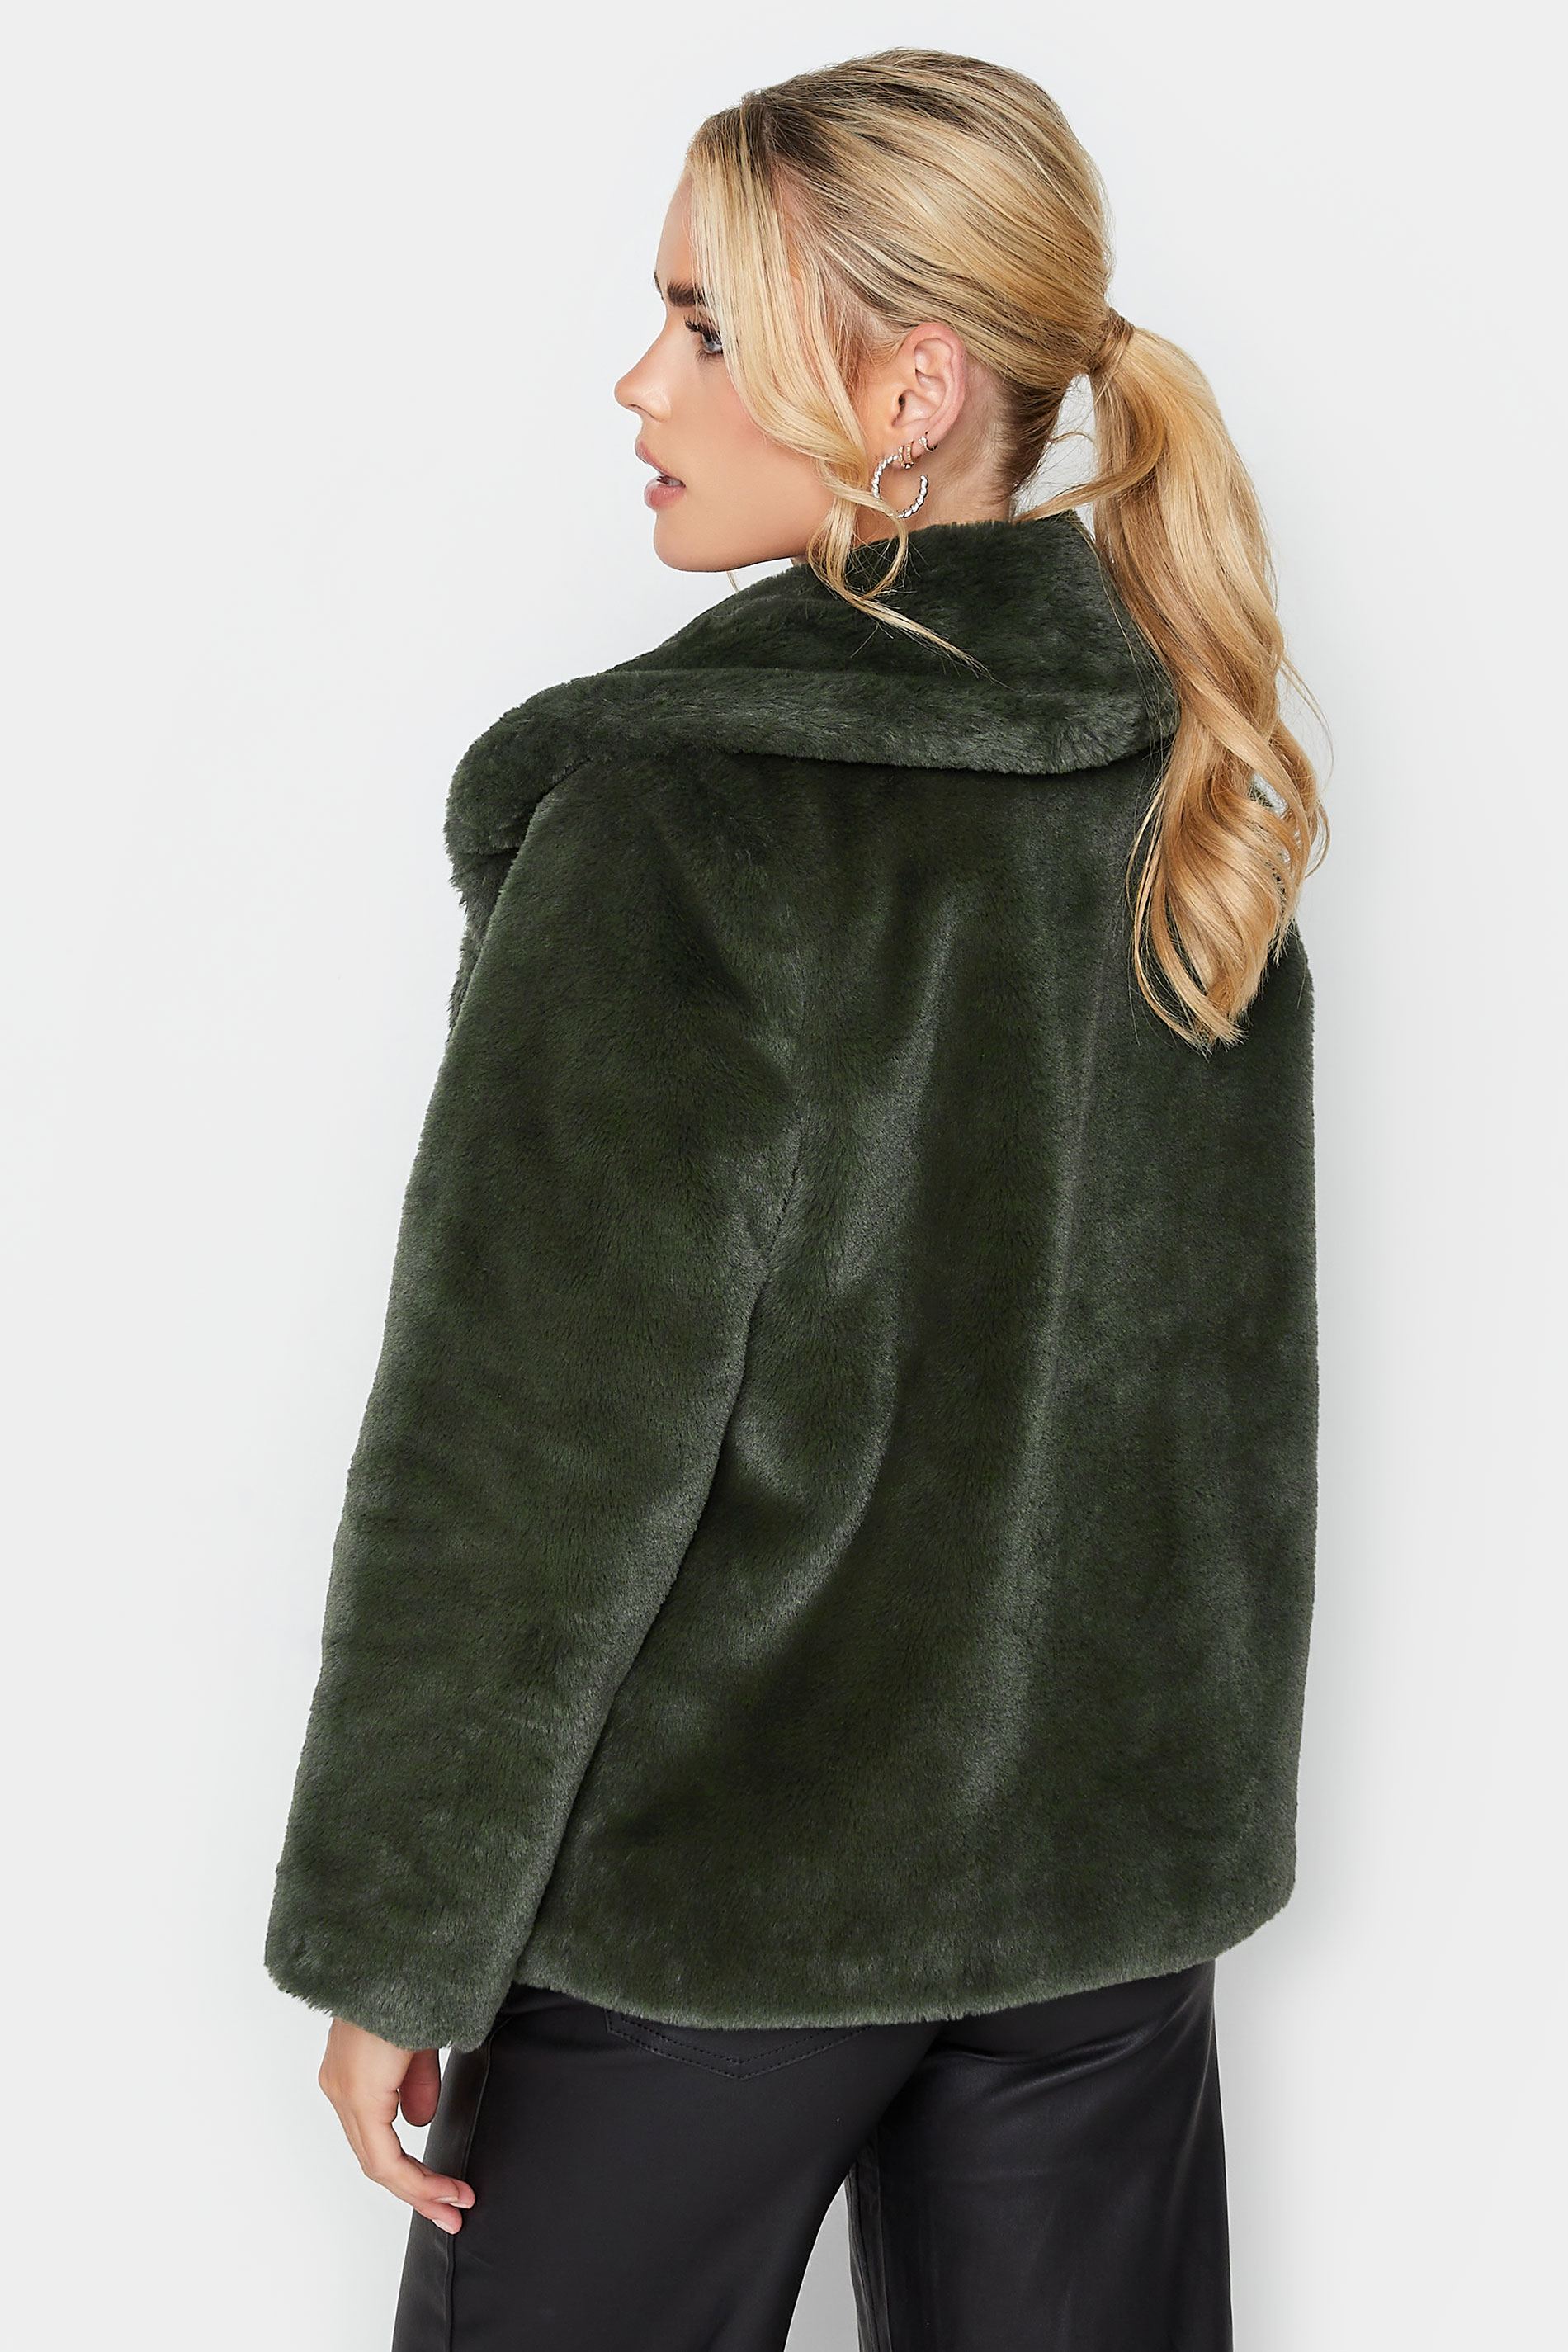 PixieGirl Dark Green Faux Fur Coat | PixieGirl 3